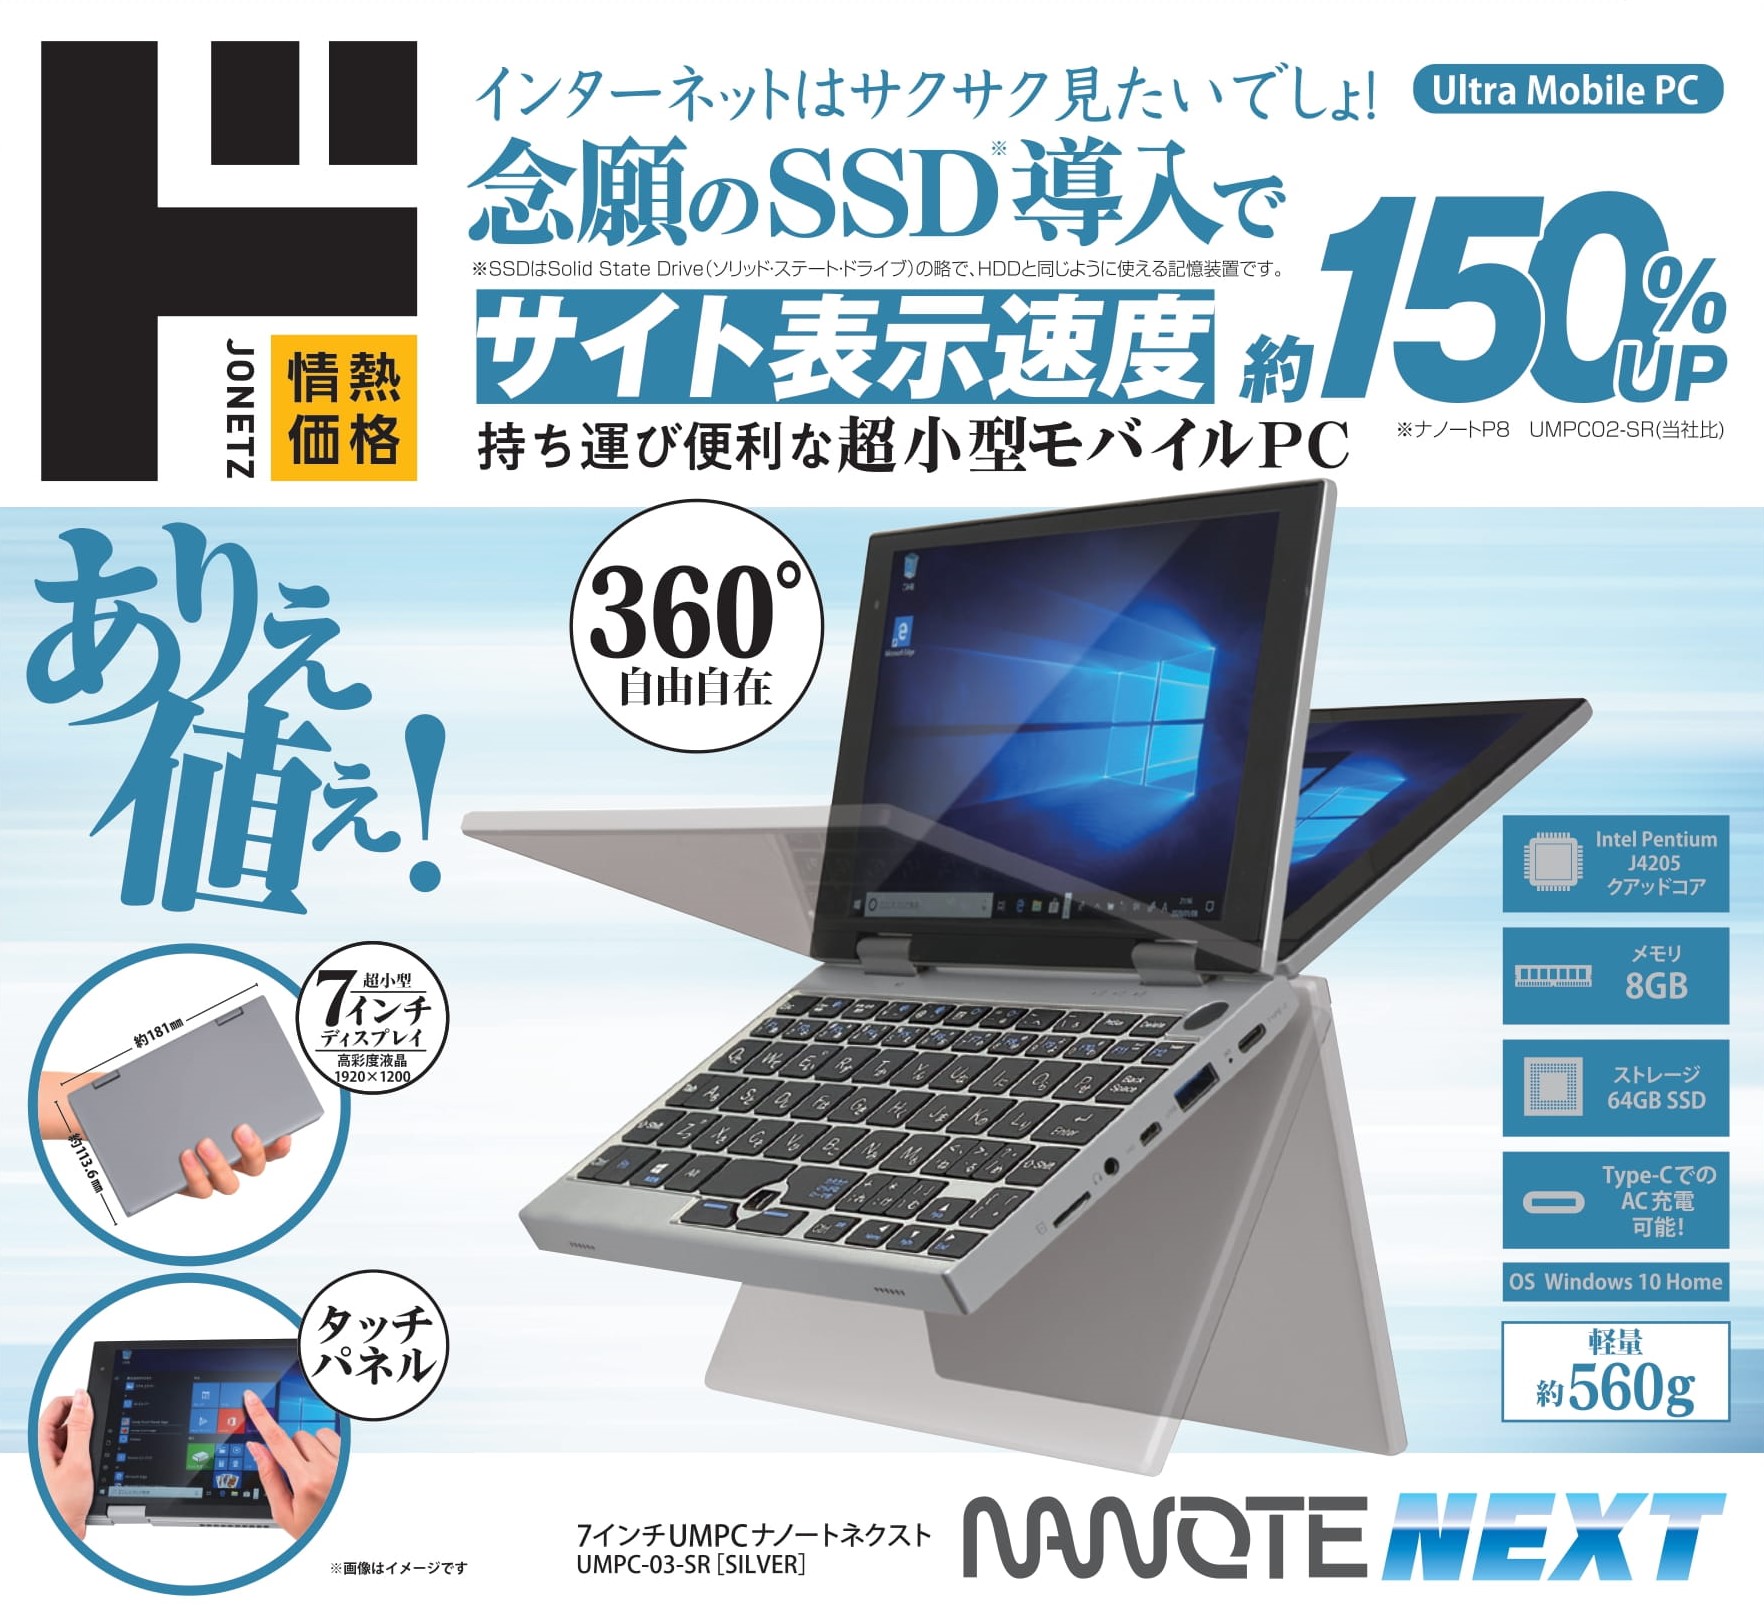 【ドン・キホーテ】SSD搭載の7型ウルトラモバイルPC「NANOTE NEXT」を5月より発売